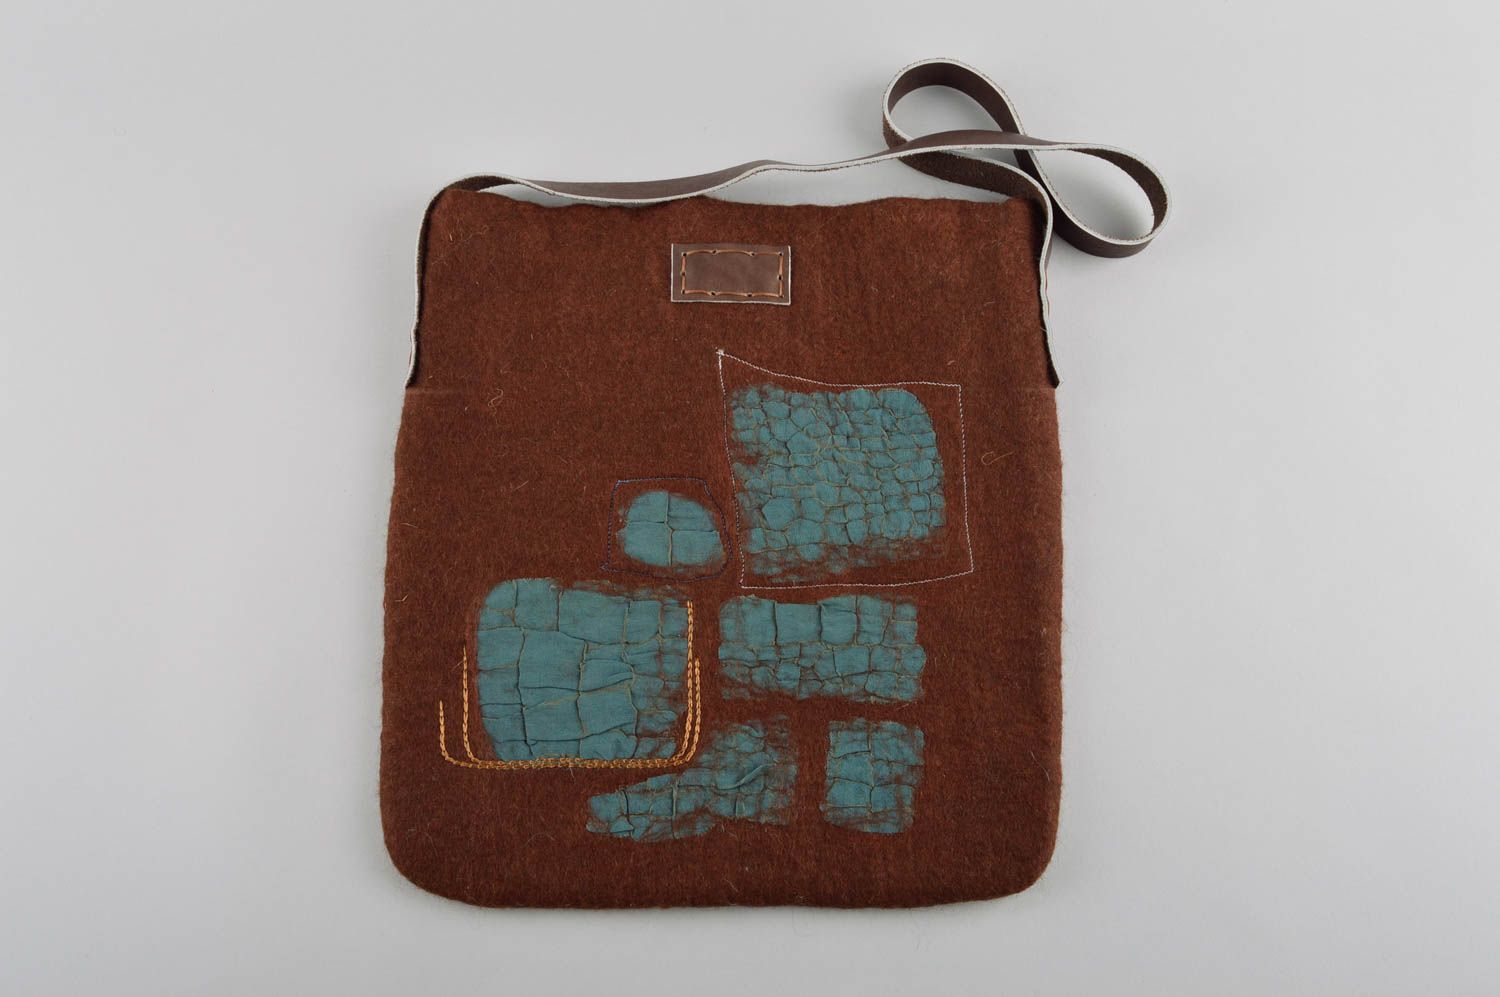 Сумка ручной работы женская сумка коричневая сумка валяние с кожаным ремешком фото 2